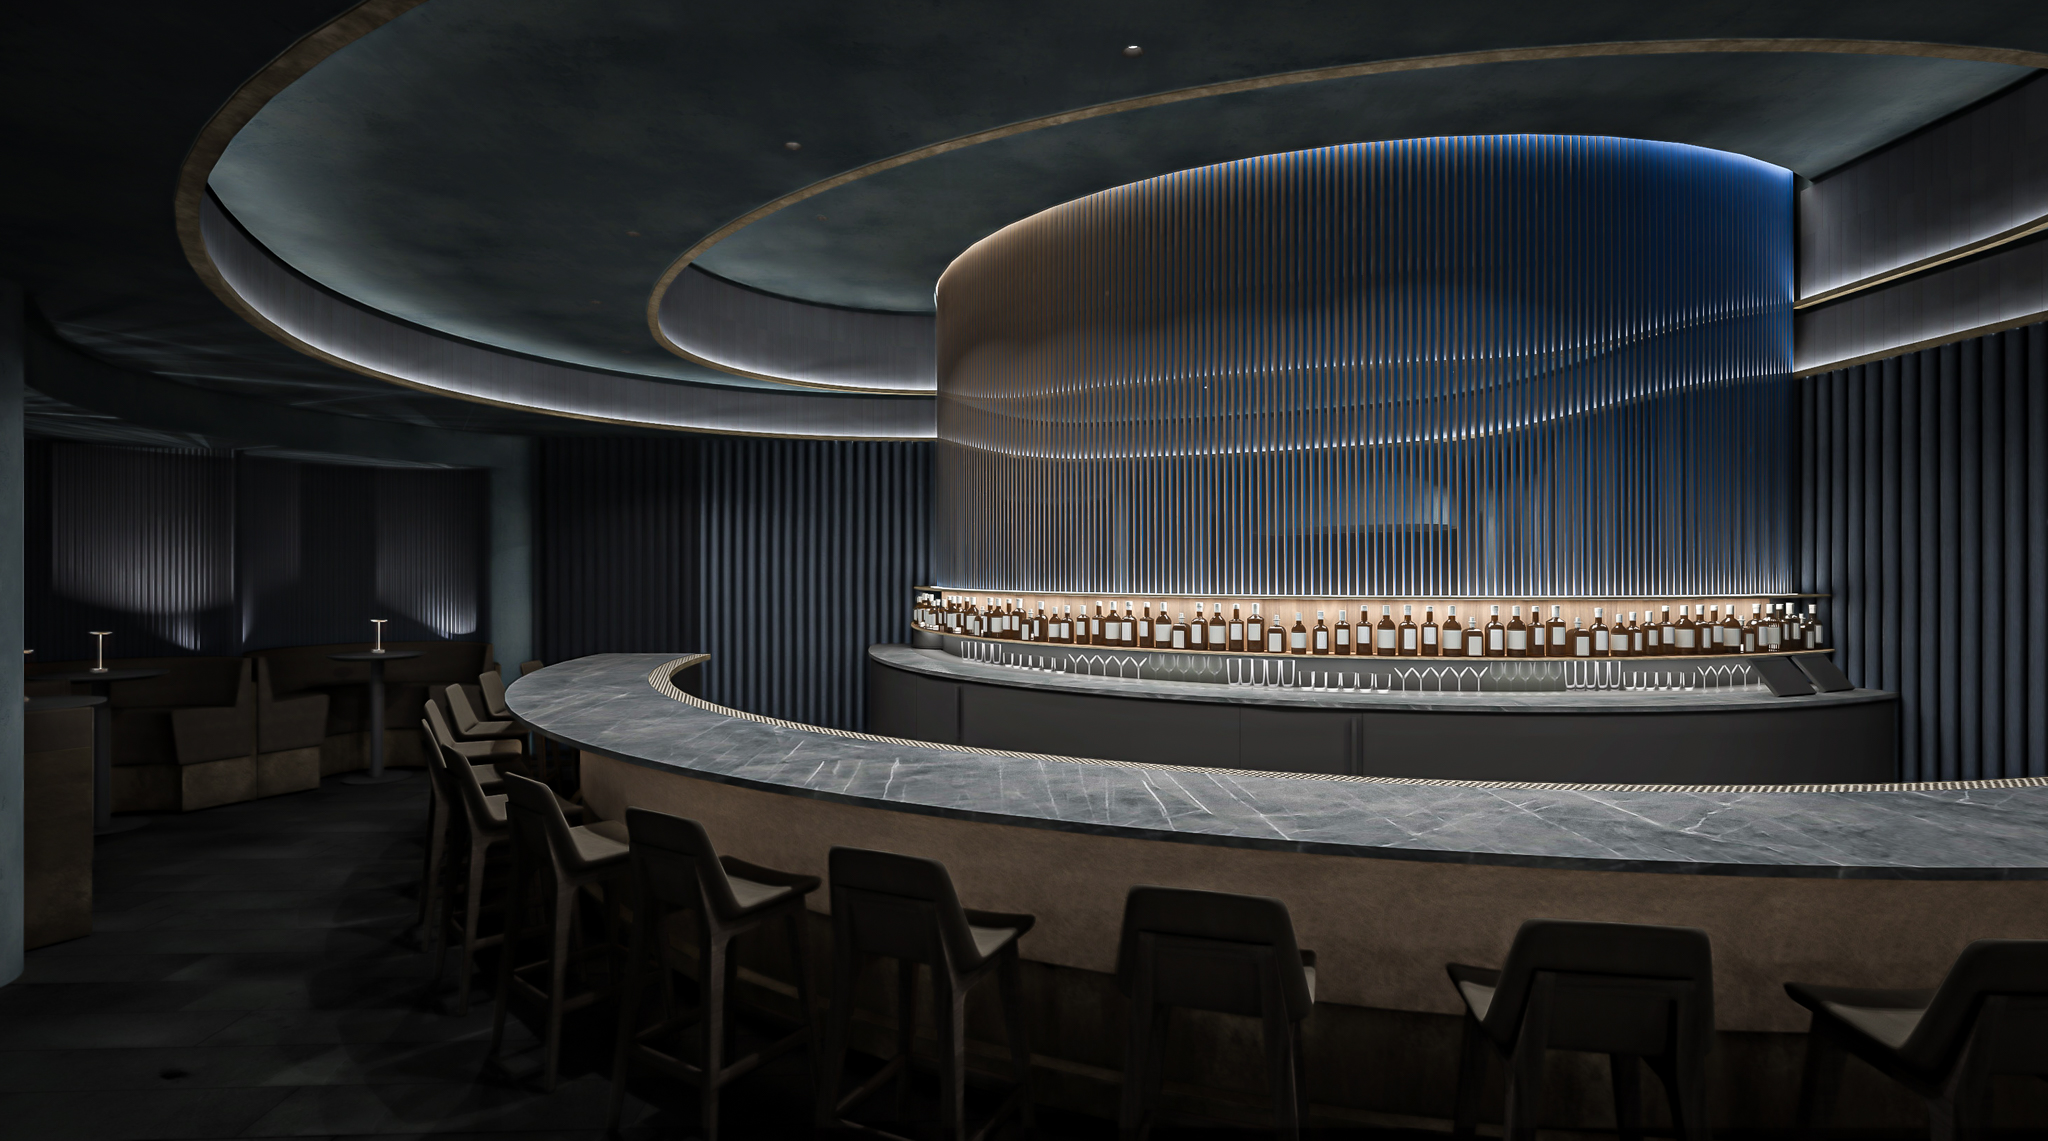 A CGI rendering of a futuristic bar.